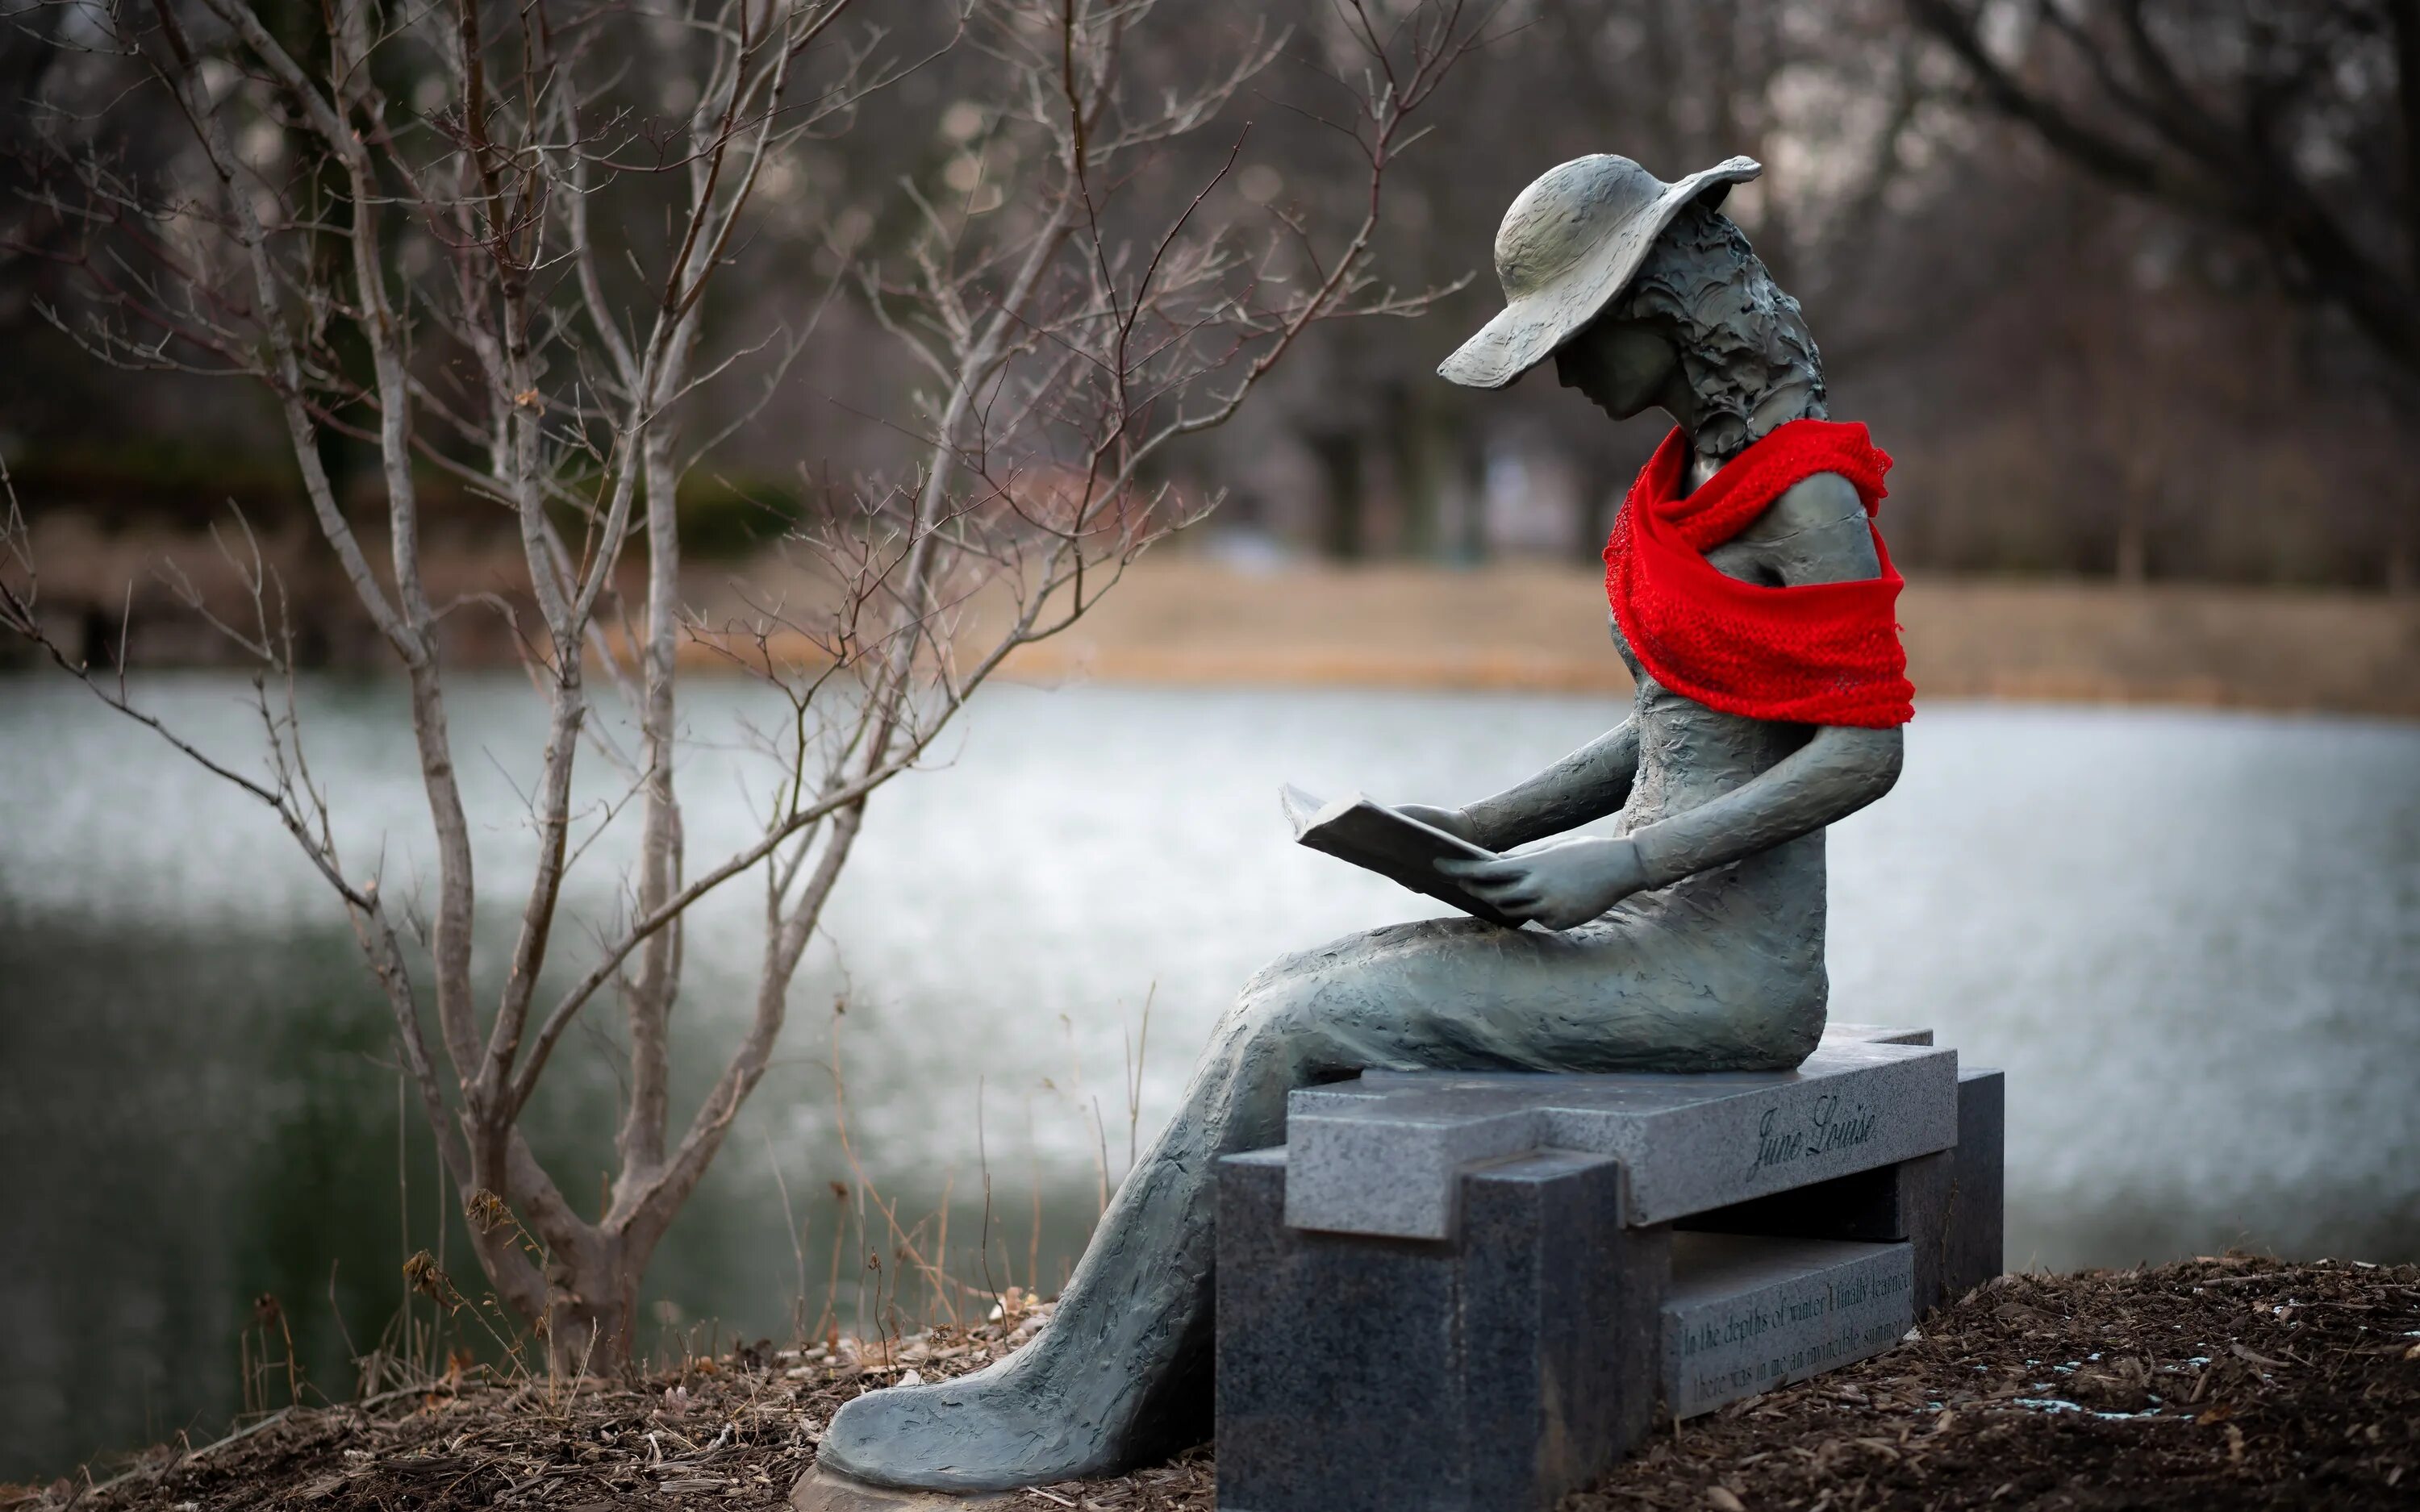 Памятник девушка на лавочке. Девушка с книжкой на скамейке. Скульптура девушка на скамейке. Скульптура сидящей девушки. Красоту сидели люди